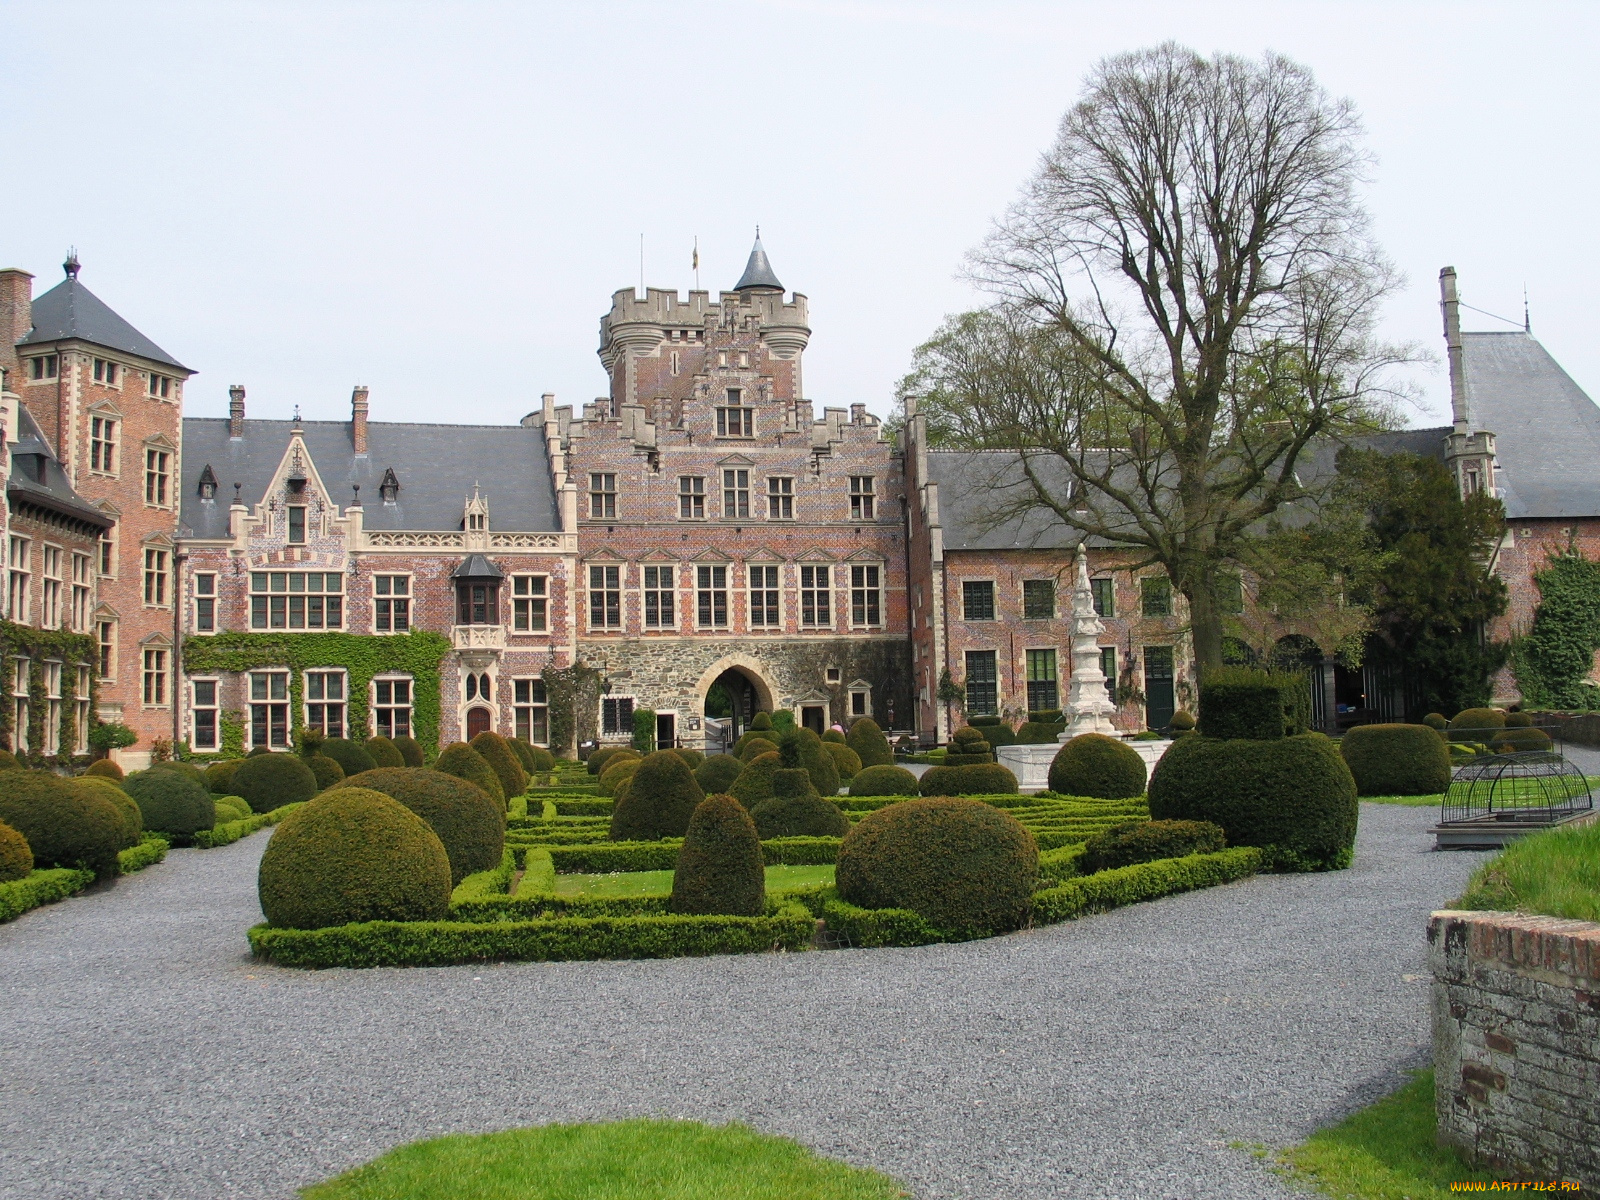 вinnenhof, castle, in, belgium, города, дворцы, замки, крепости, постриженные, кусты, замок, дерево